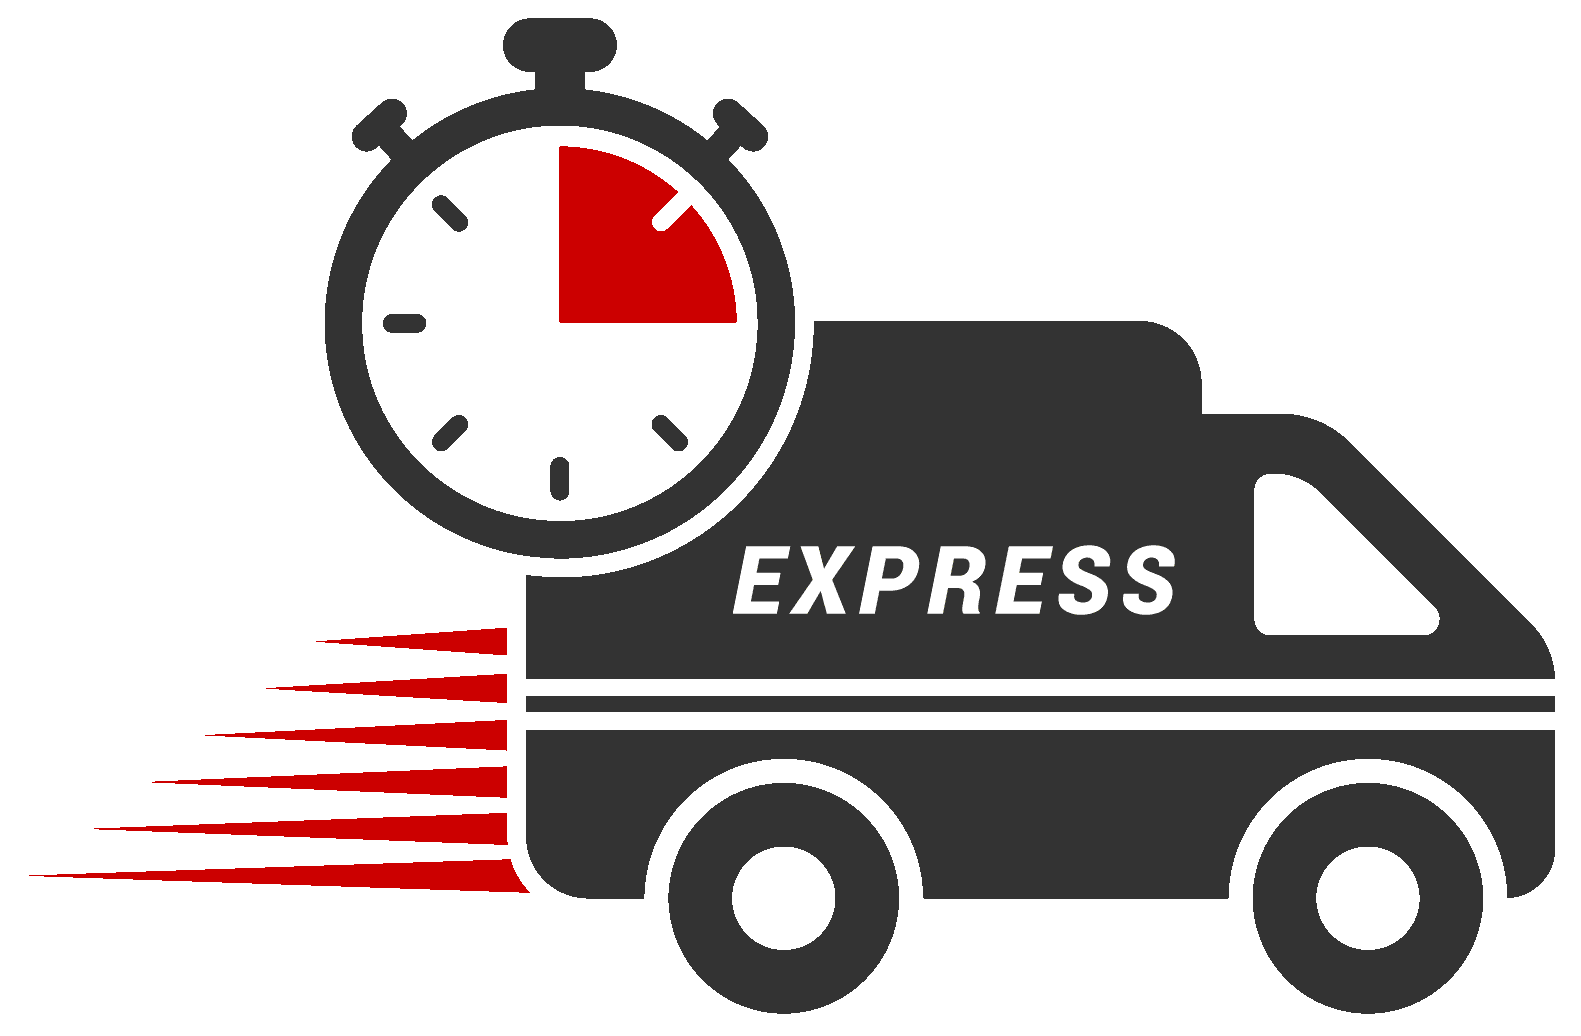 Express-Lieferung